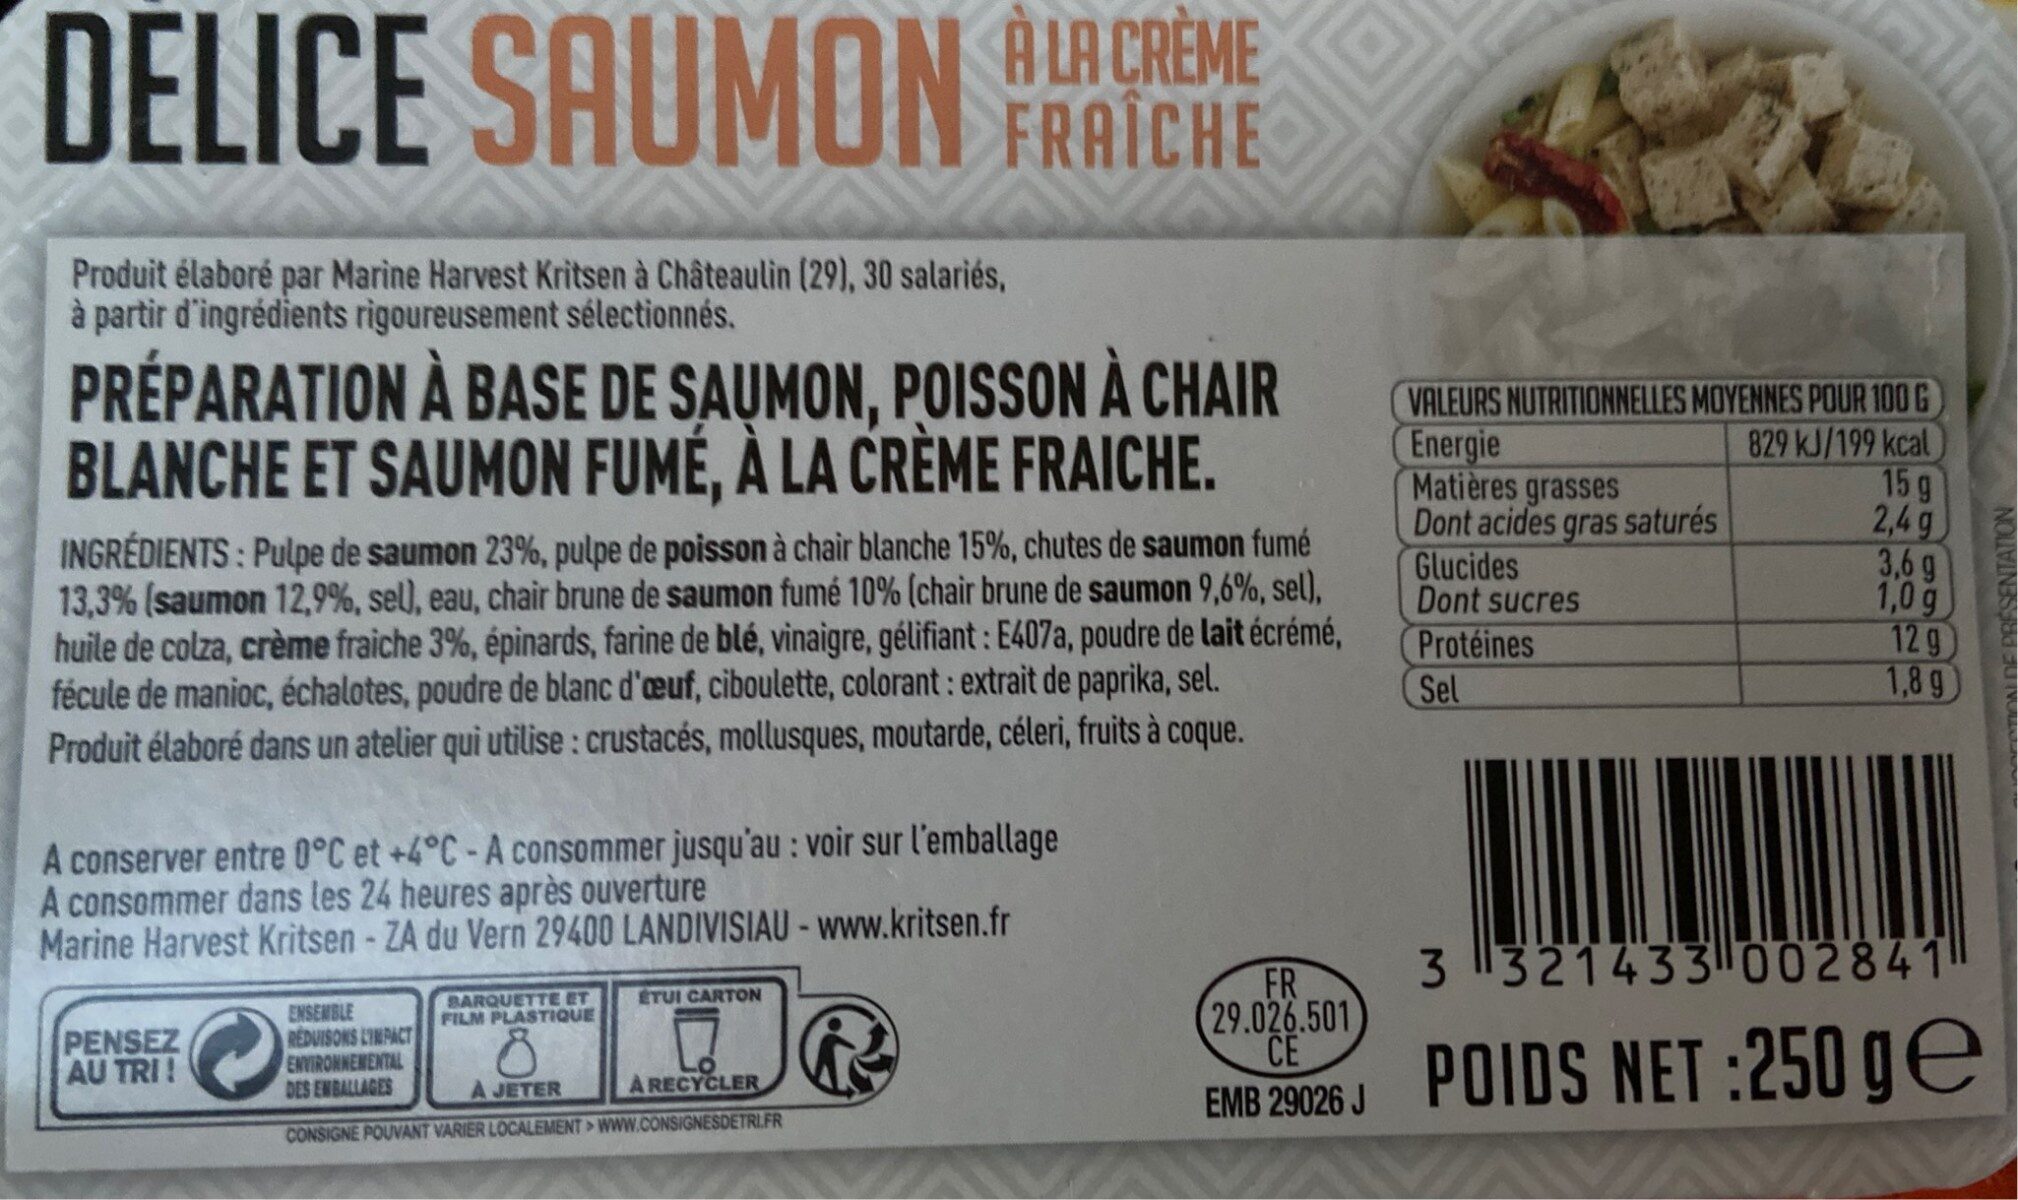 Délice Saumon à crême fraiche - Nutrition facts - fr